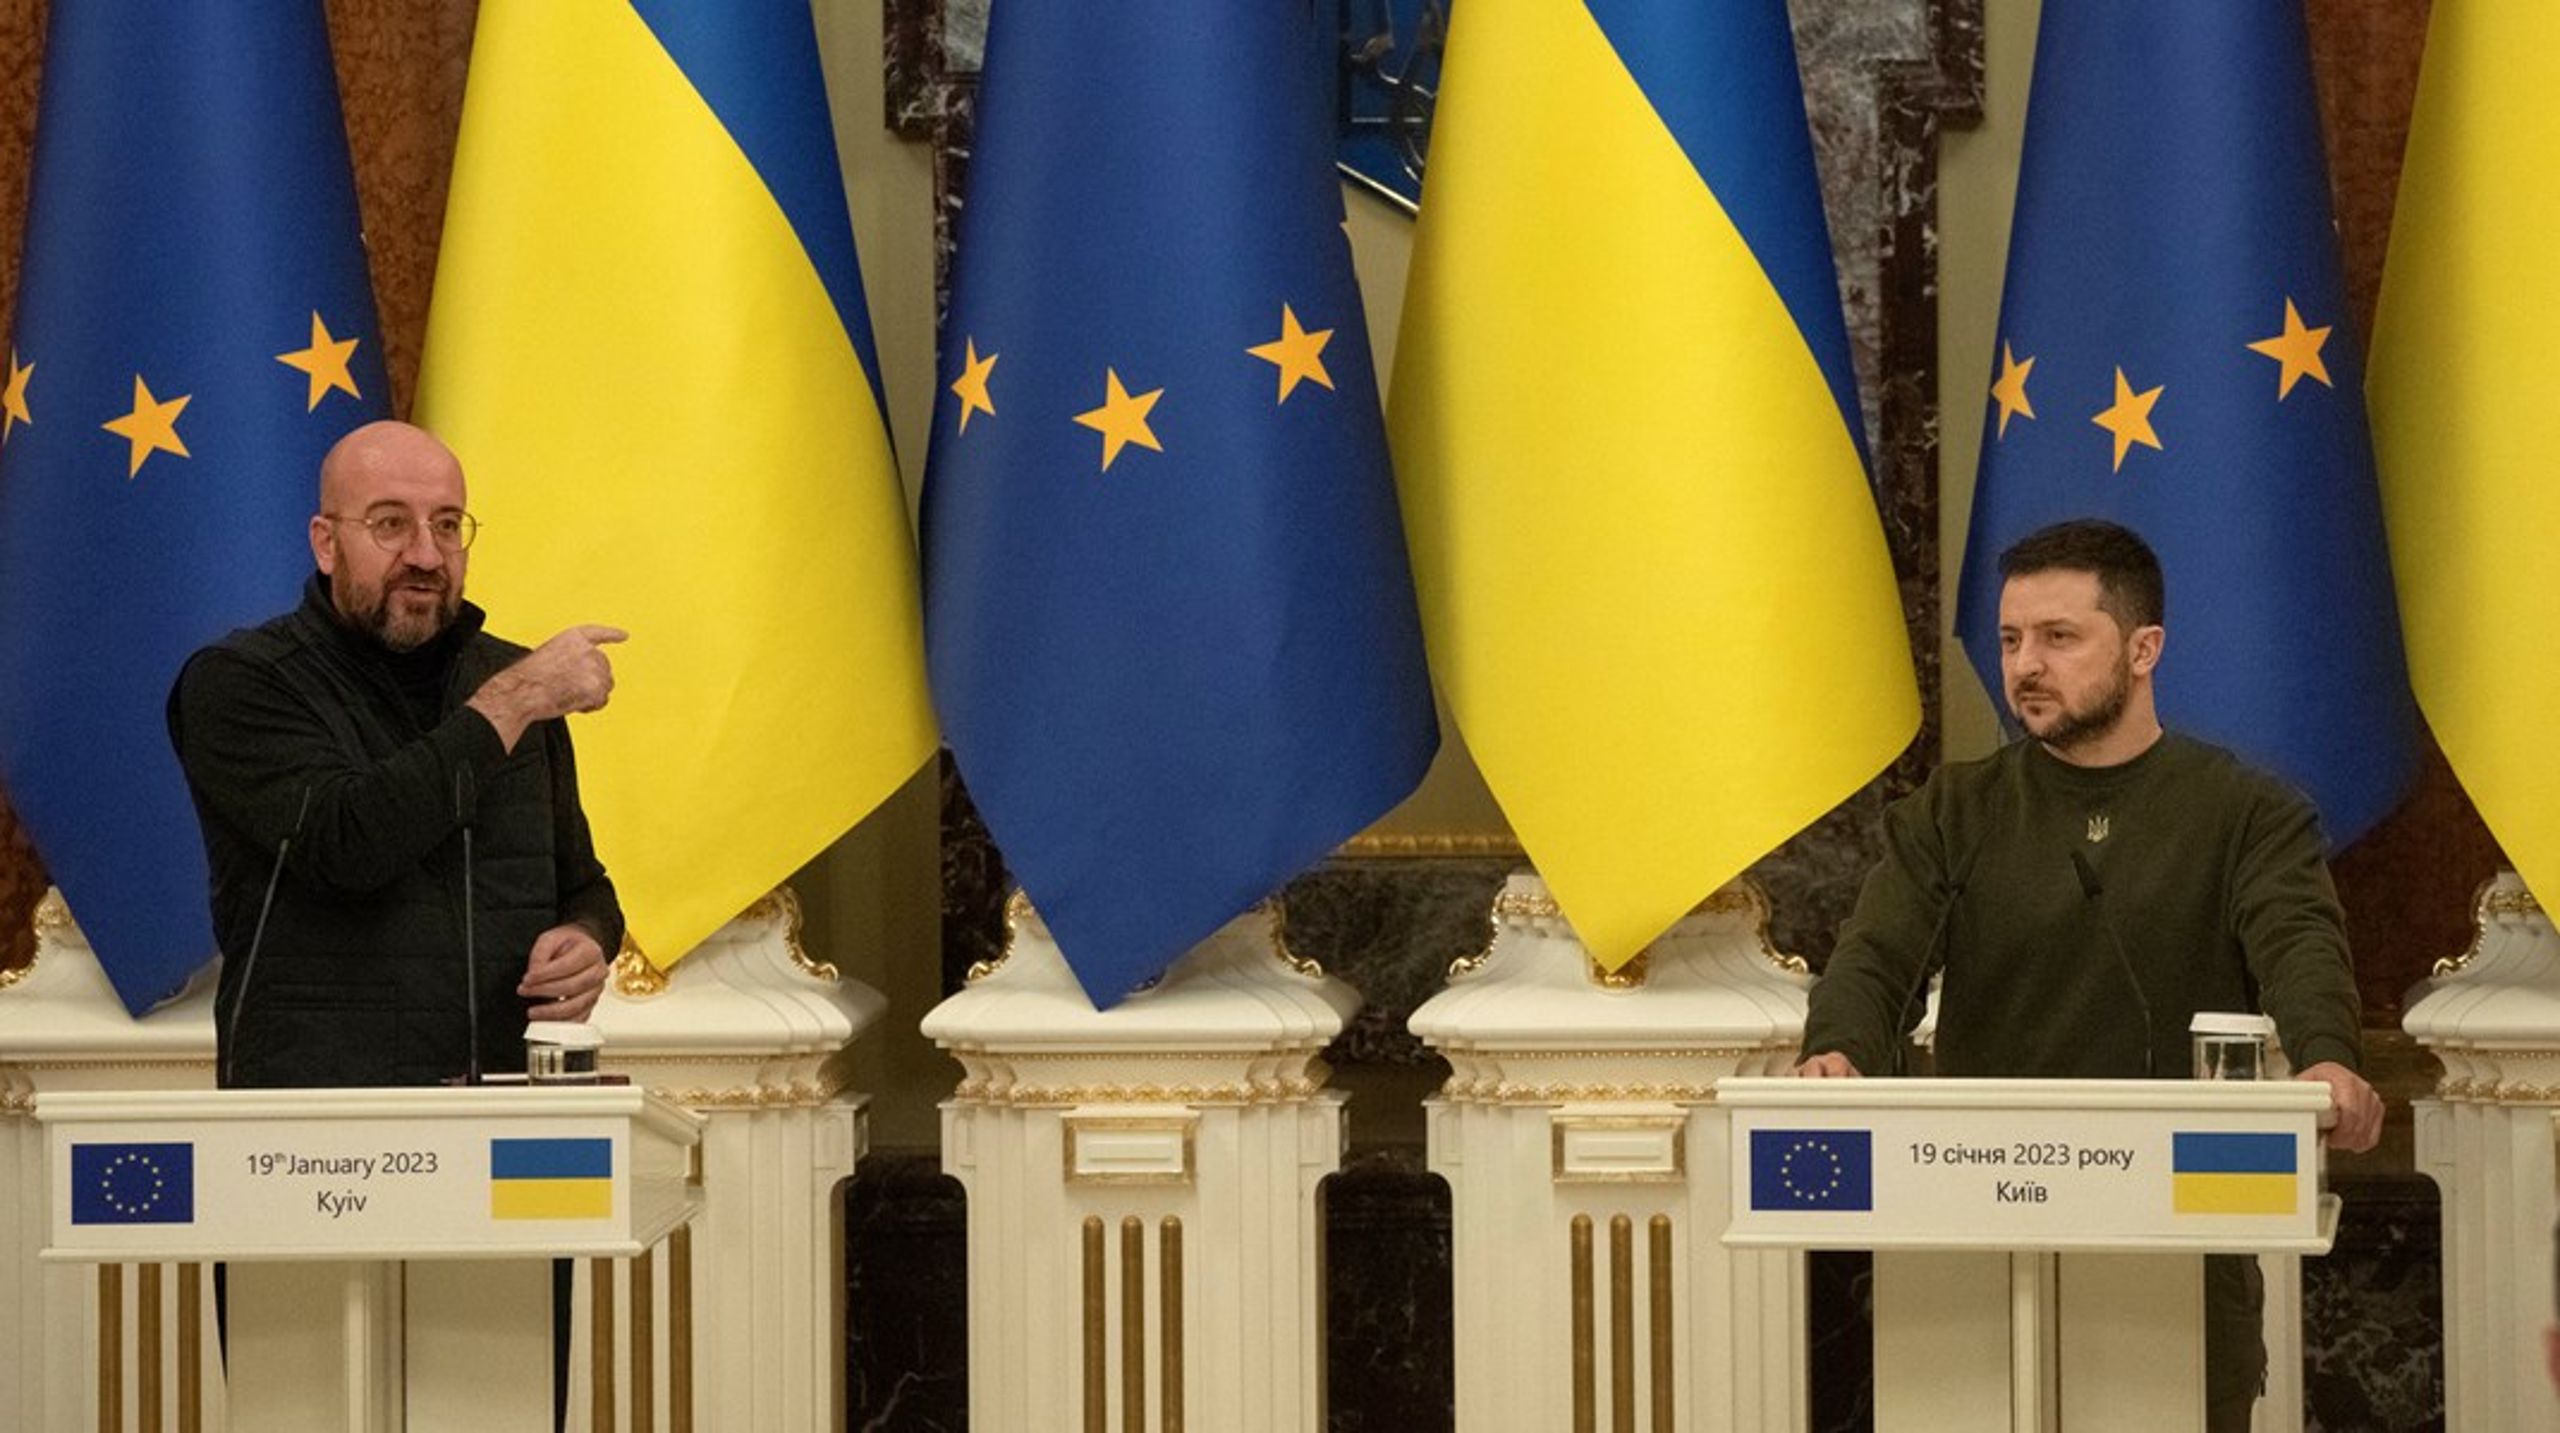 Redan förra veckan var EU:s ordförande för Europeiska rådet, Charles Michel, i Kyiv. Nu återkommer han med EU-kommissionens ordförande Ursula von der Leyen för det första officiella toppmötet mellan EU och Ukraina sedan krigets början.